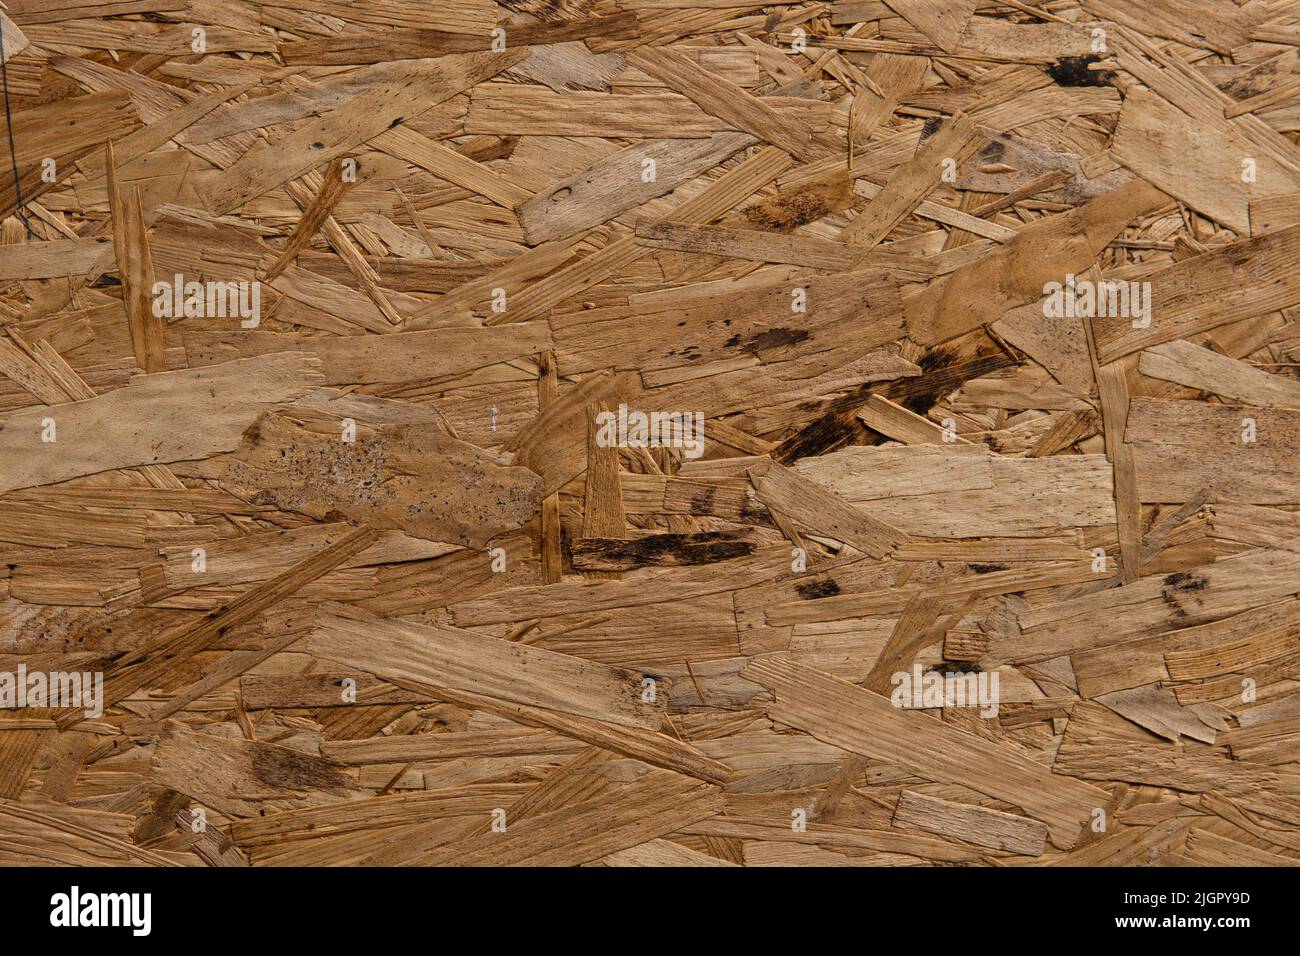 Material mit Holz-OSB-Struktur. Abstrakter Holzhintergrund. Orientierte Strandboard-Tapete. Das natürliche Holzbaumaterial. Holzverarbeitung im Abfall. Stockfoto